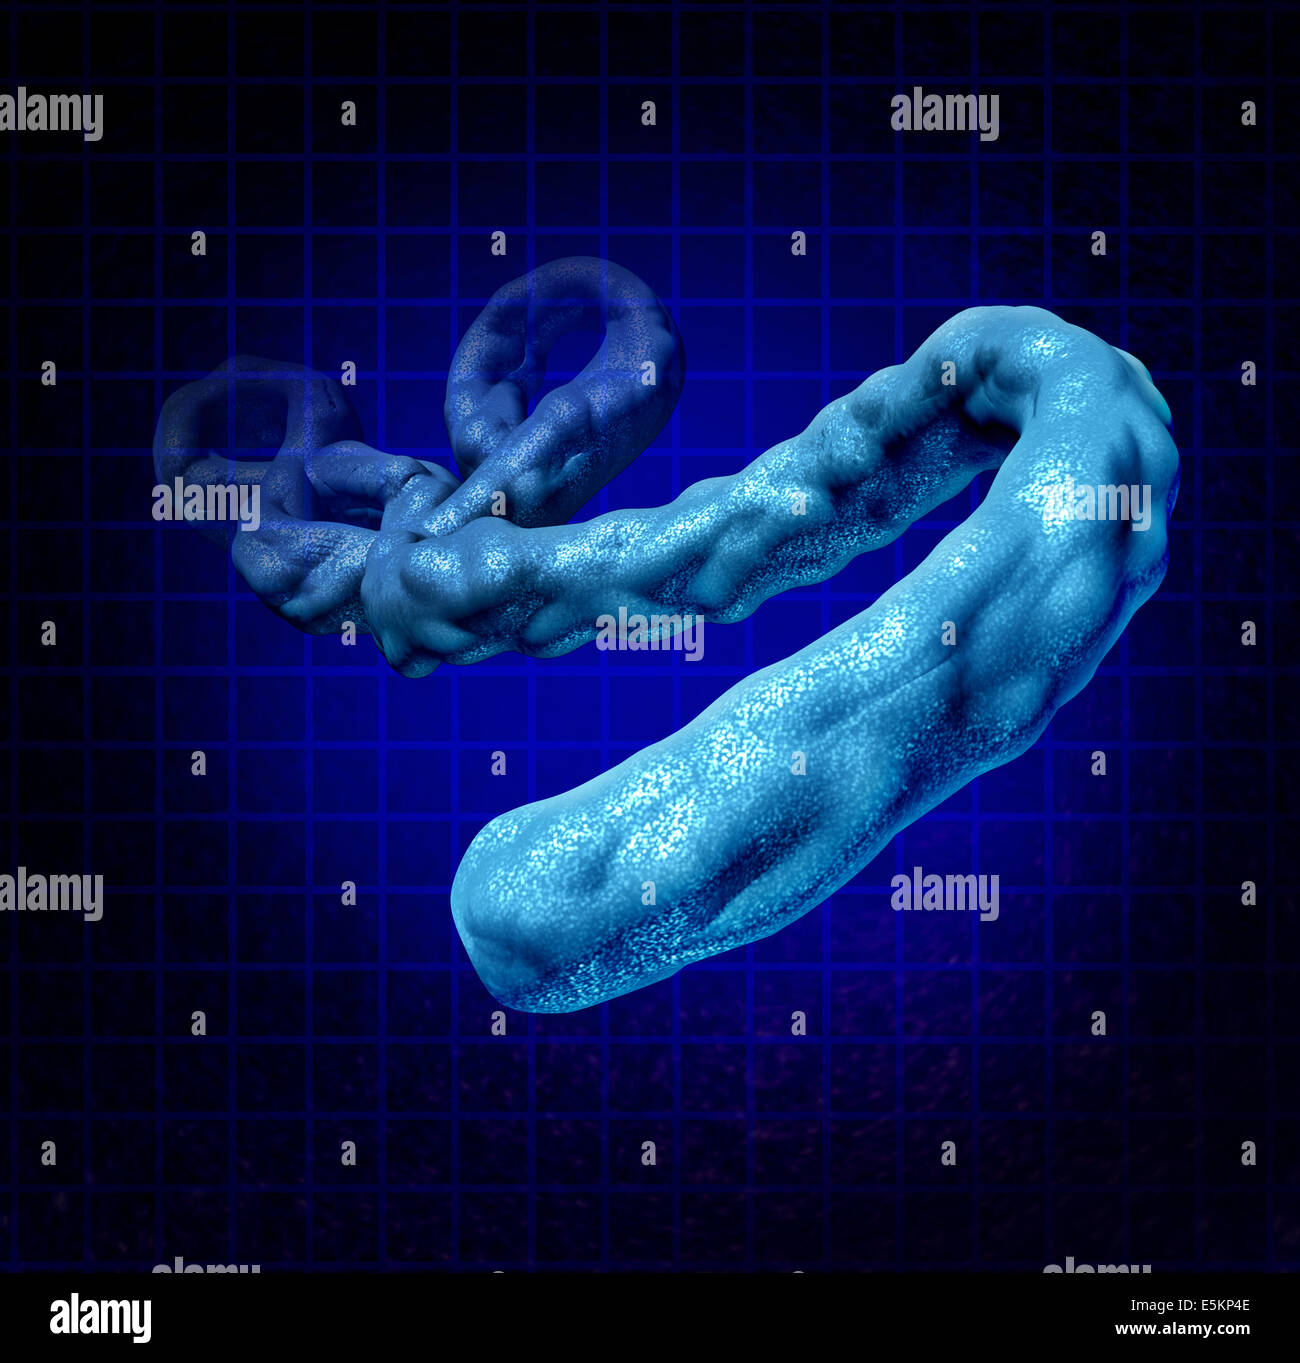 Ebola concetto medico come un tridimensionale di microbi pericolosi provocando sintomi come febbre emorragica come la salute dell'uomo simbolo del dangersÊof infezioni causate da un microrganismo mortale. Foto Stock